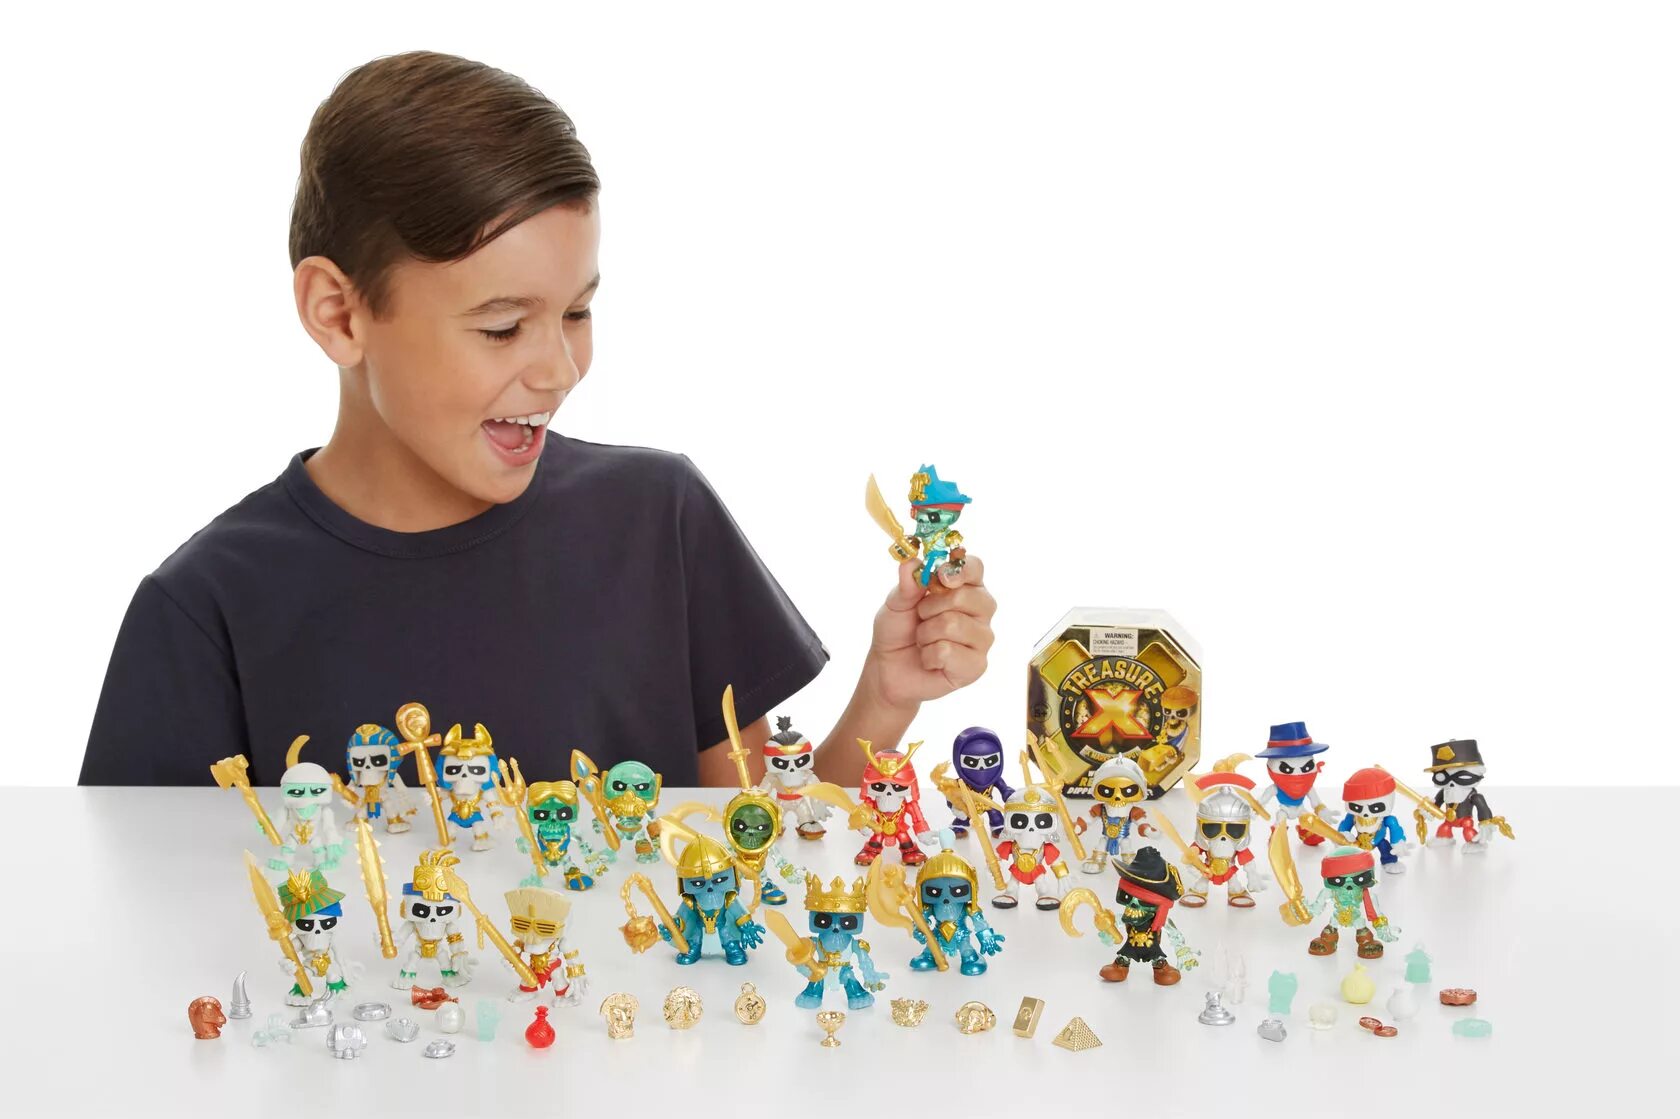 Игровой набор Treasure x10. Фигурки Трежер Икс. Коллекция игрушек. Игрушки для детей 10 лет.